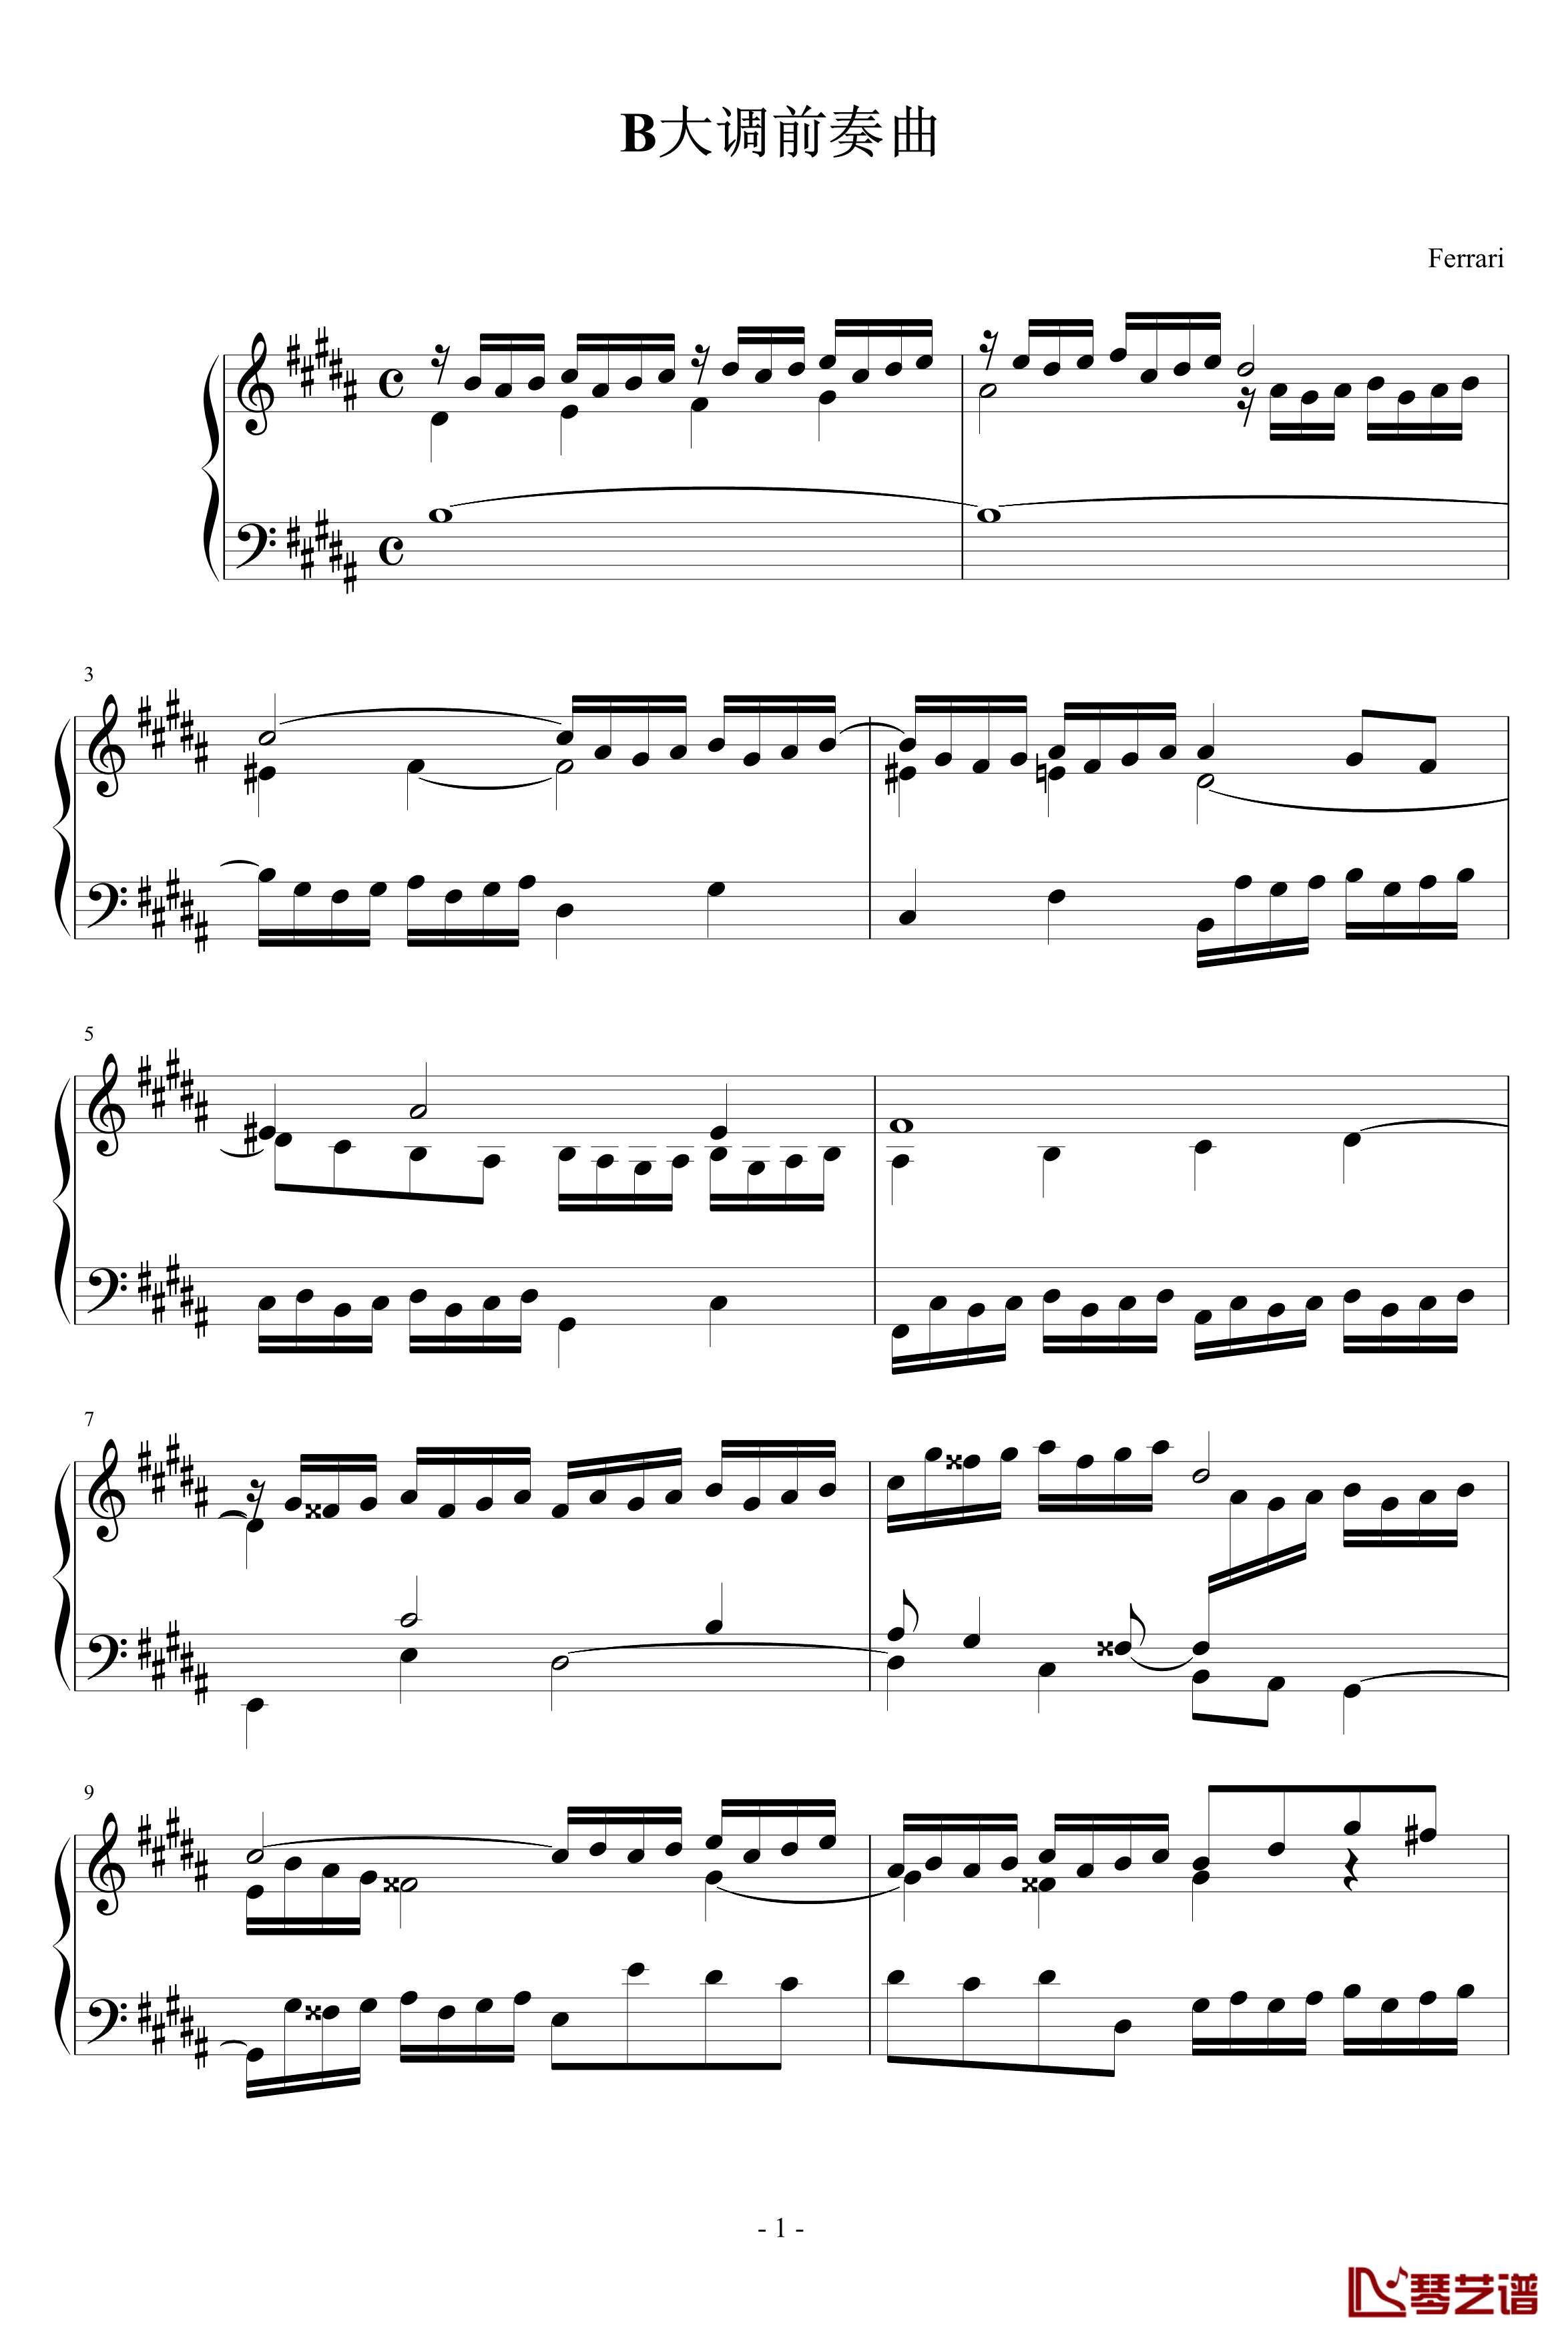 前奏曲钢琴谱-Ferrari版-巴赫